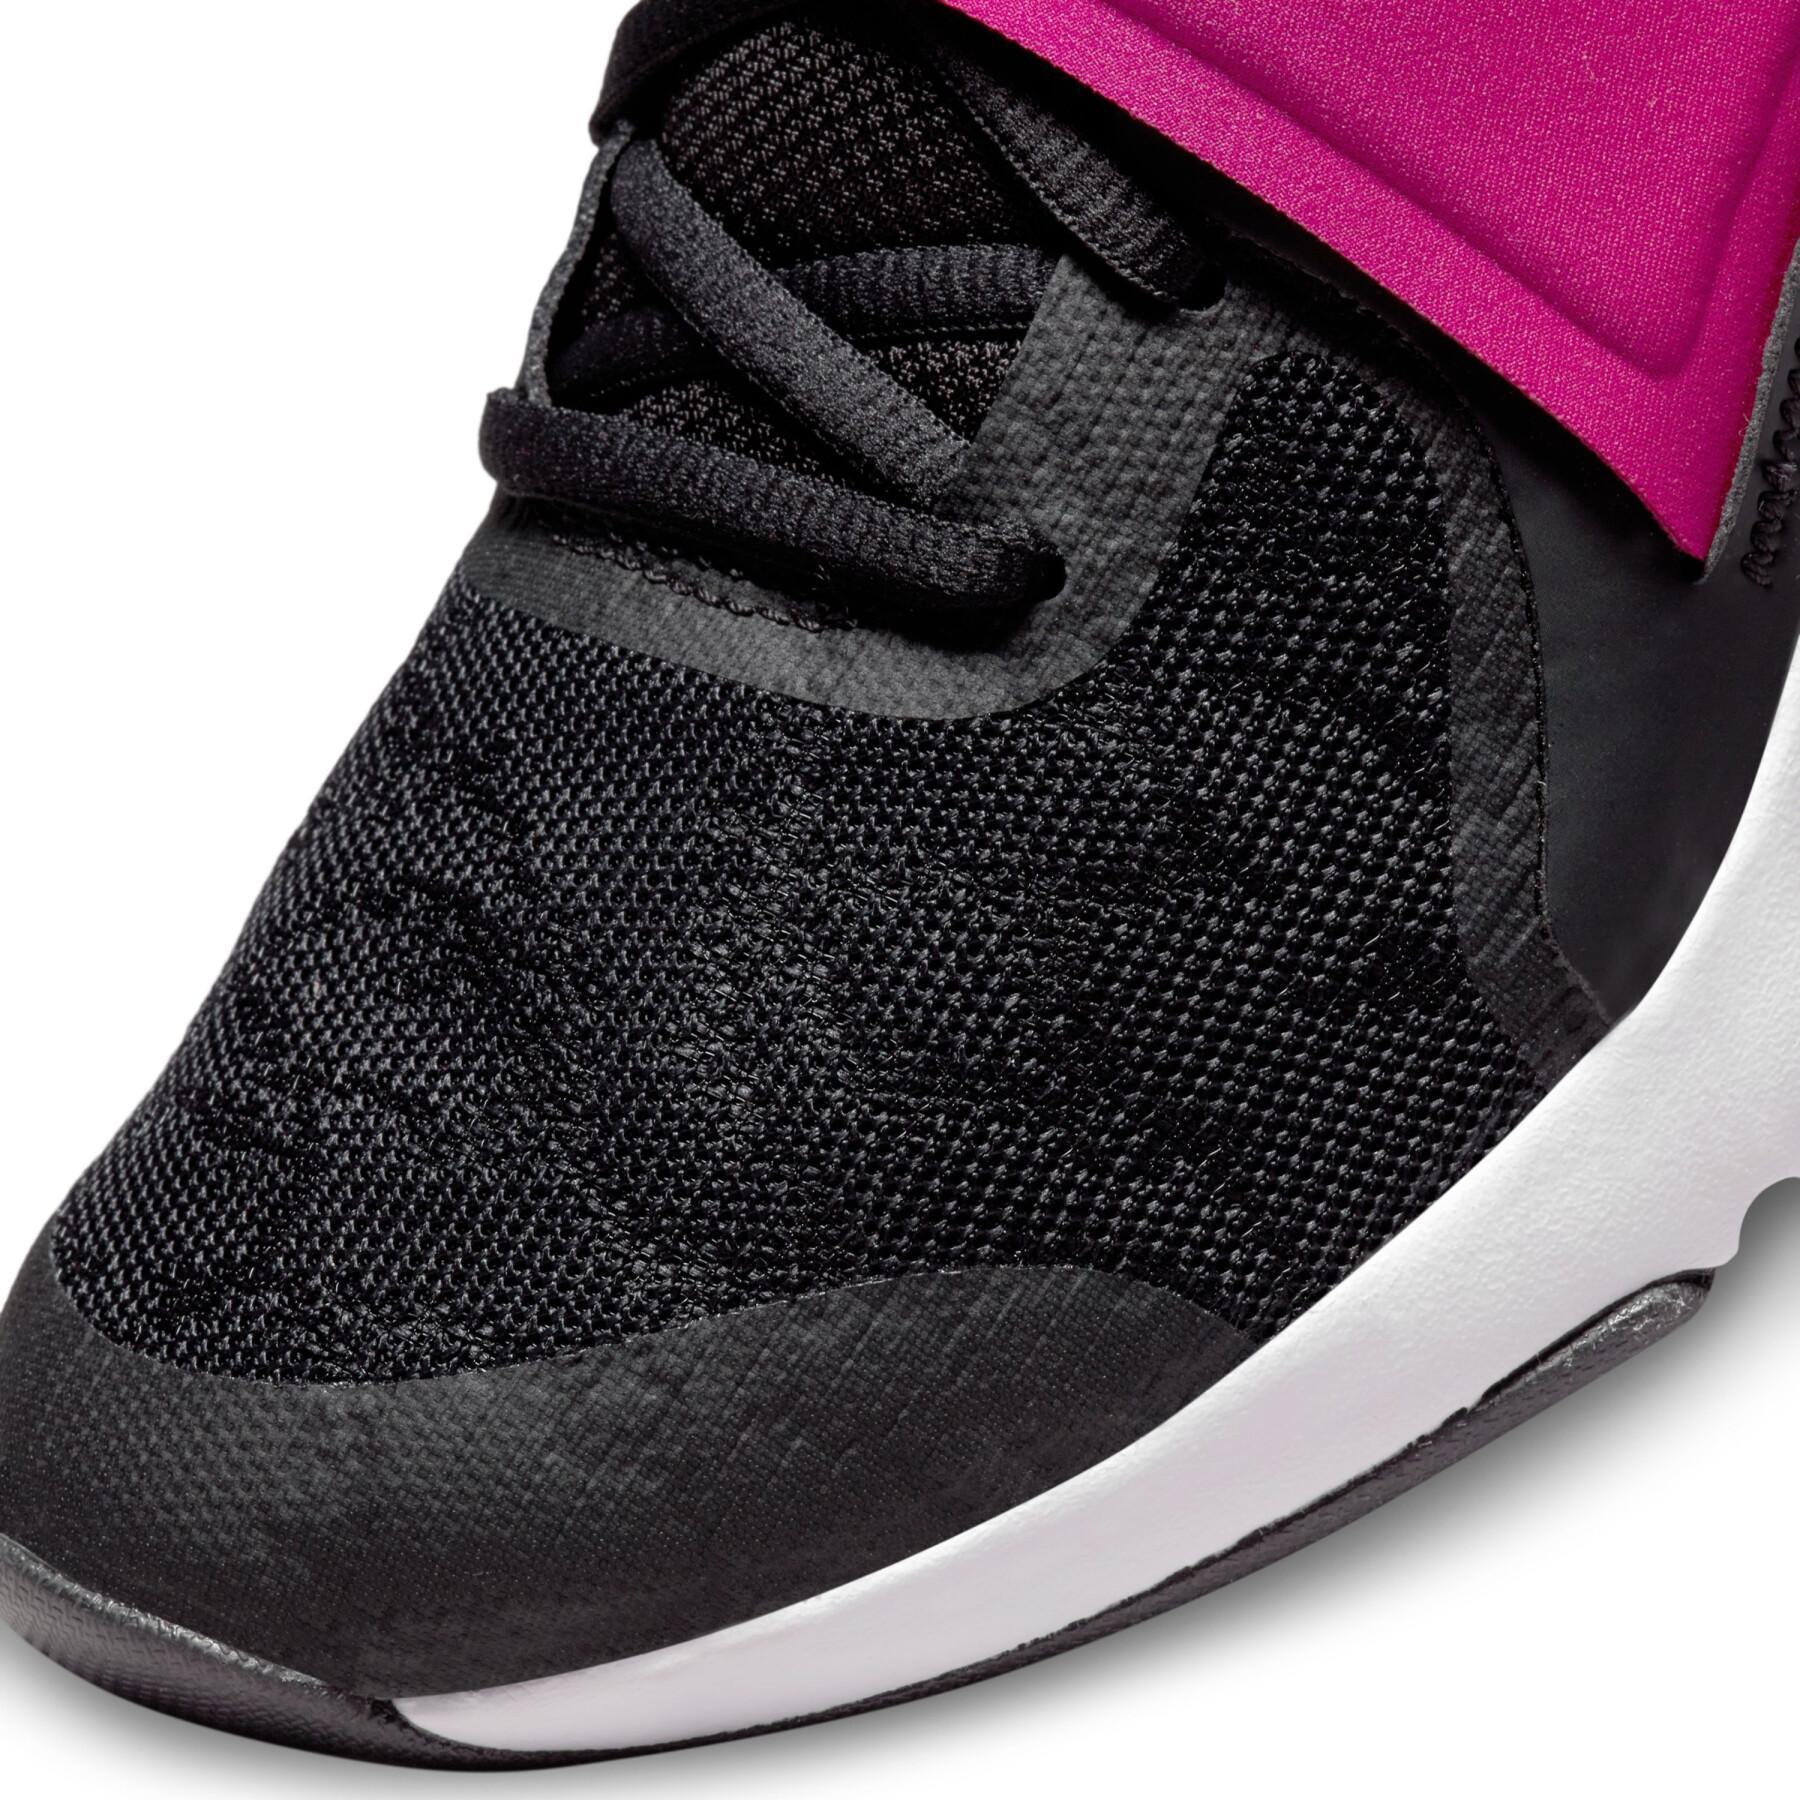 Women's cross training shoes Nike Renew In-season TR 12